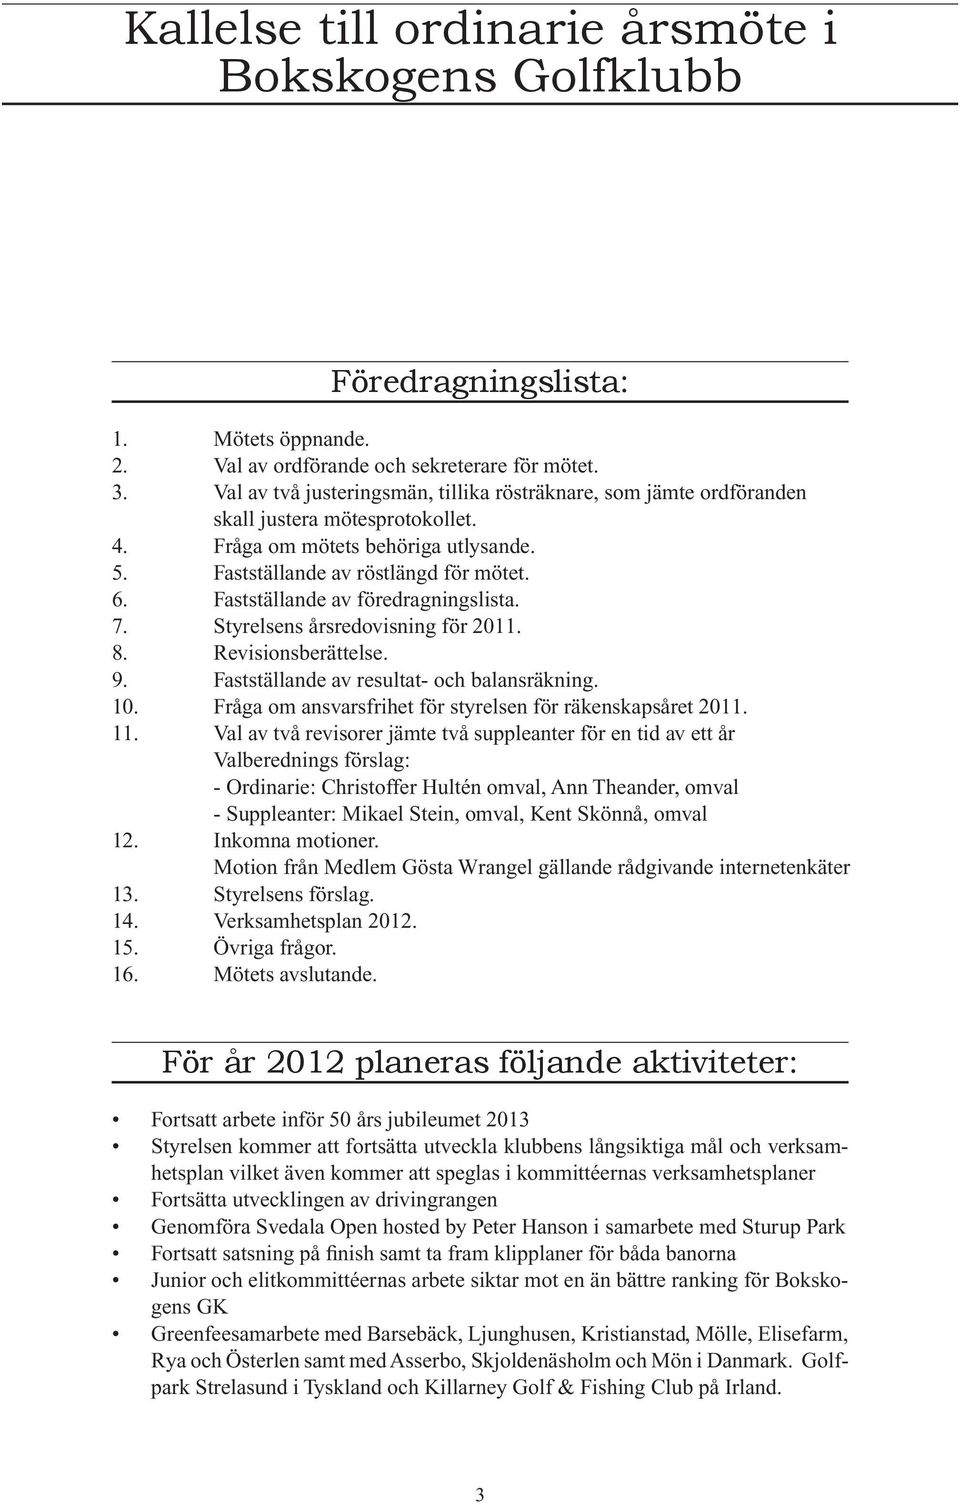 Fastställande av föredragningslista. 7. Styrelsens årsredovisning för 2011. 8. Revisionsberättelse. 9. Fastställande av resultat- och balansräkning. 10.